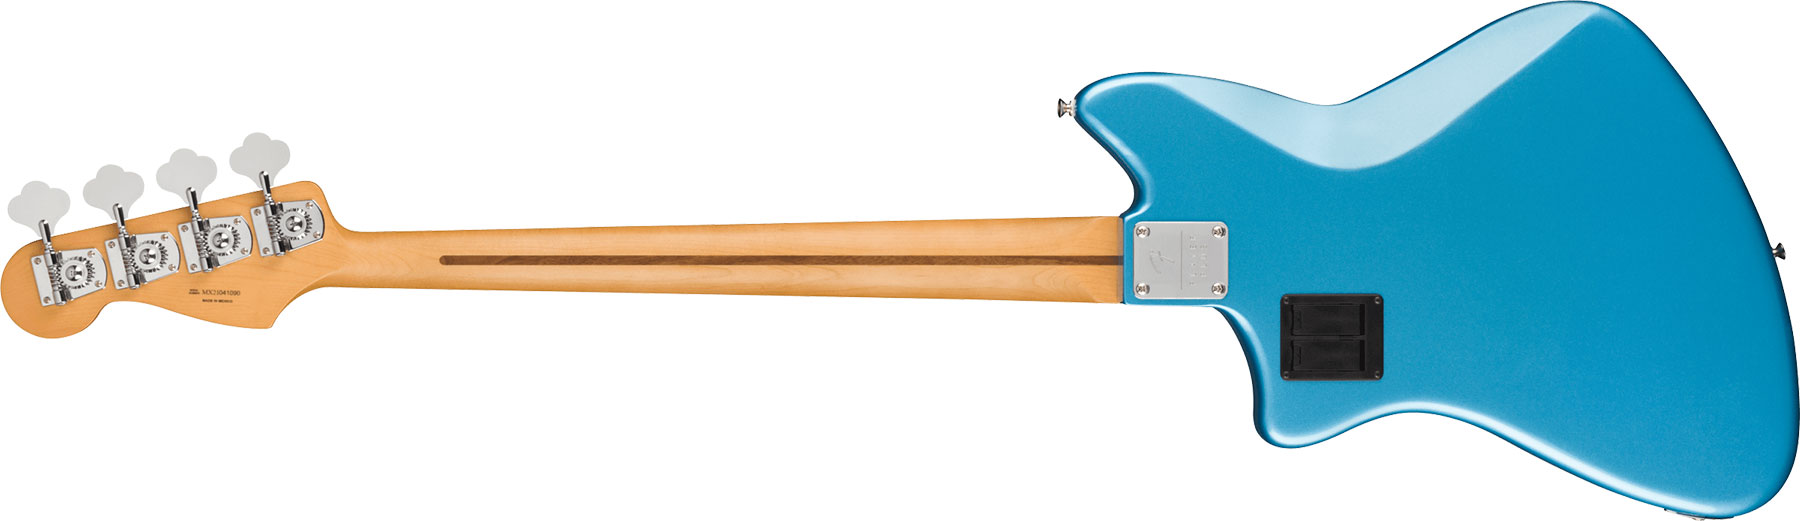 Fender Meteora Bass Active Player Plus Mex Pf - Opal Spark - Bajo eléctrico de cuerpo sólido - Variation 1